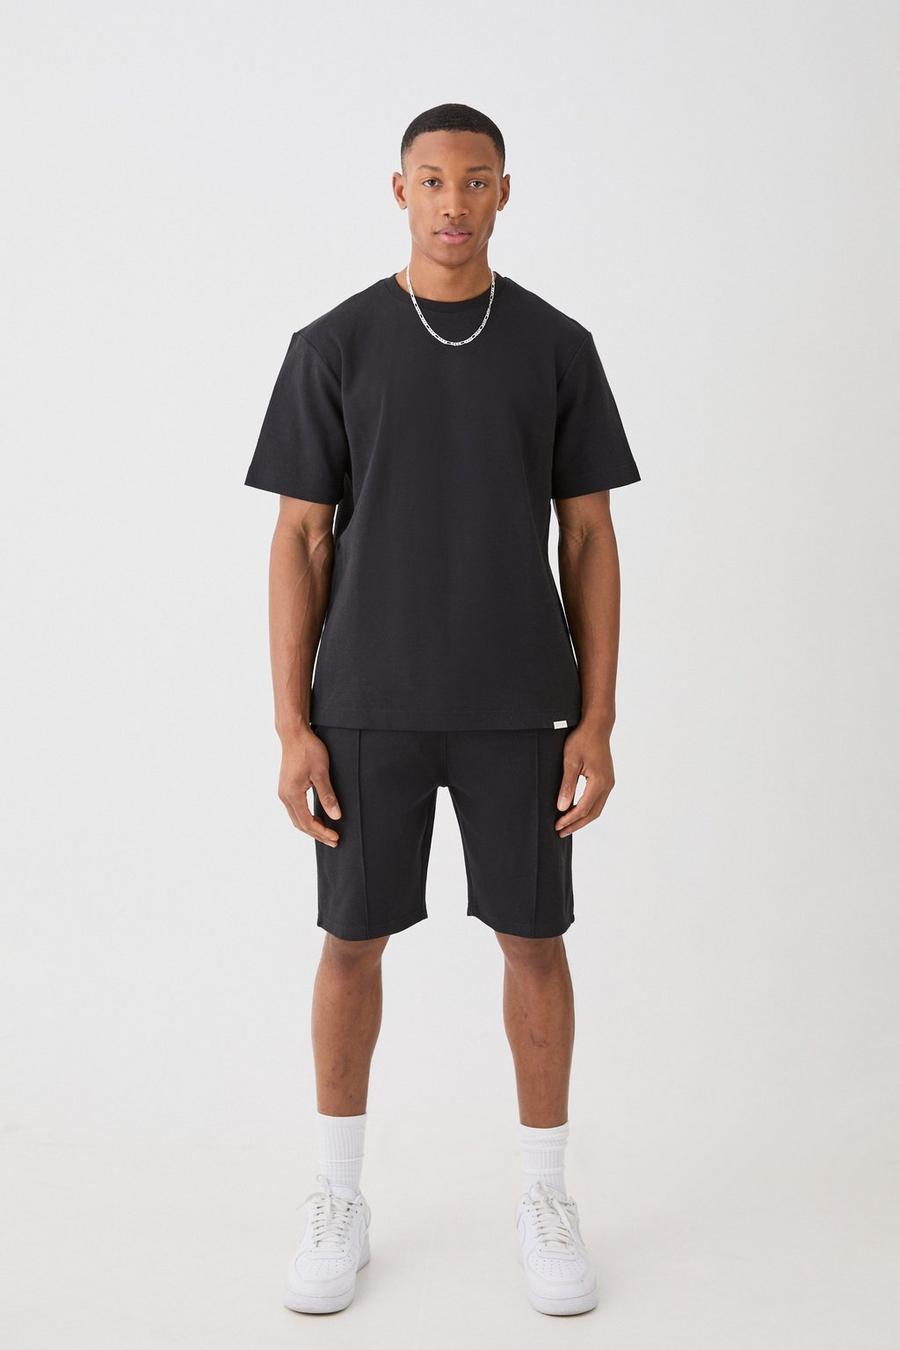 T-Shirt & Shorts, Black